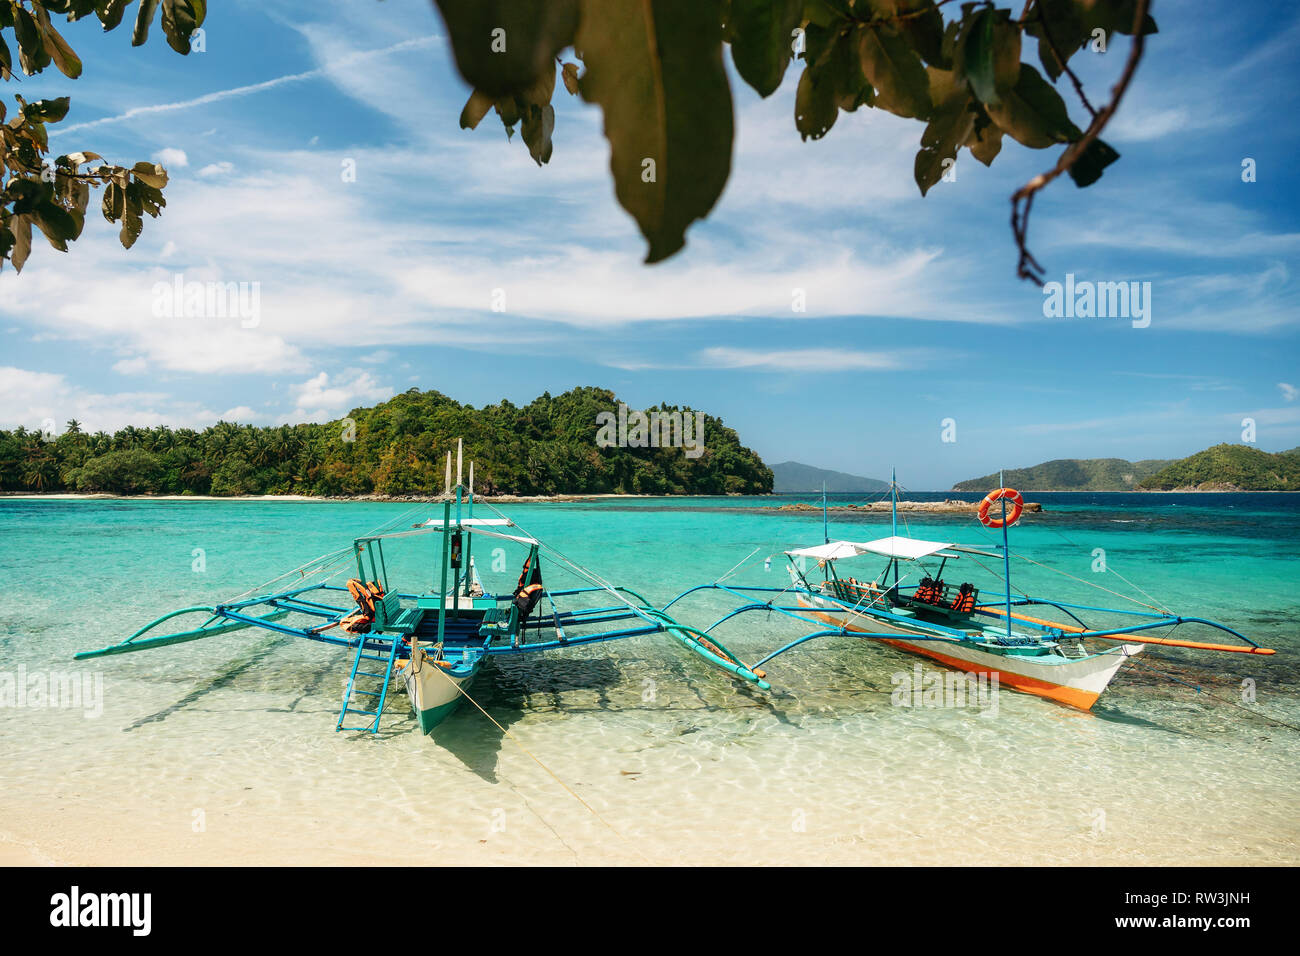 Small bangka boats on beach of Paradise island, Port Barton, Philippines Stock Photo